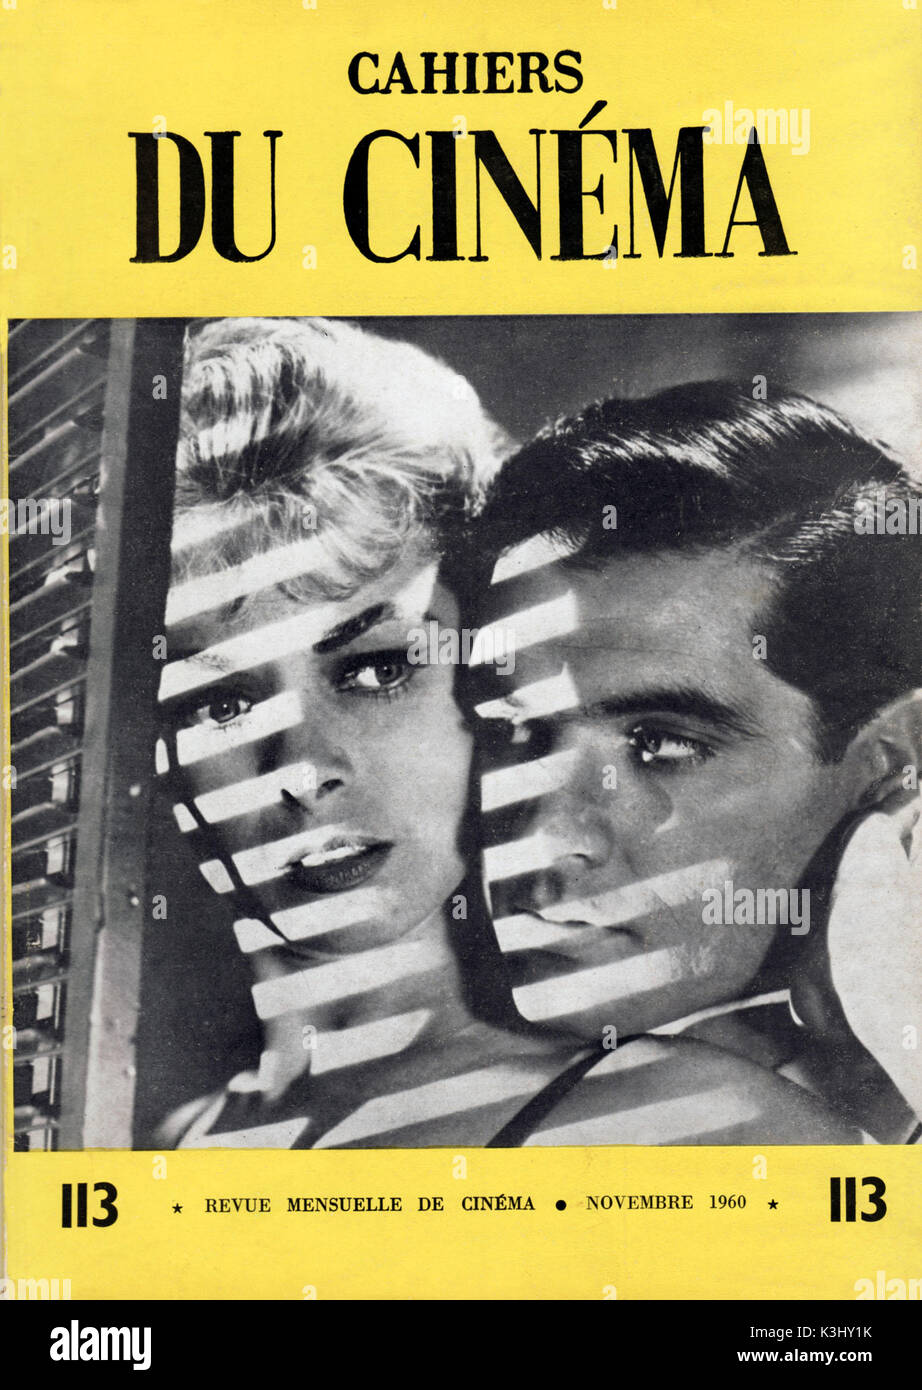 Les CAHIERS DU CINÉMA Numéro 113 Novembre 1960 Couverture : Psycho Photo  Stock - Alamy